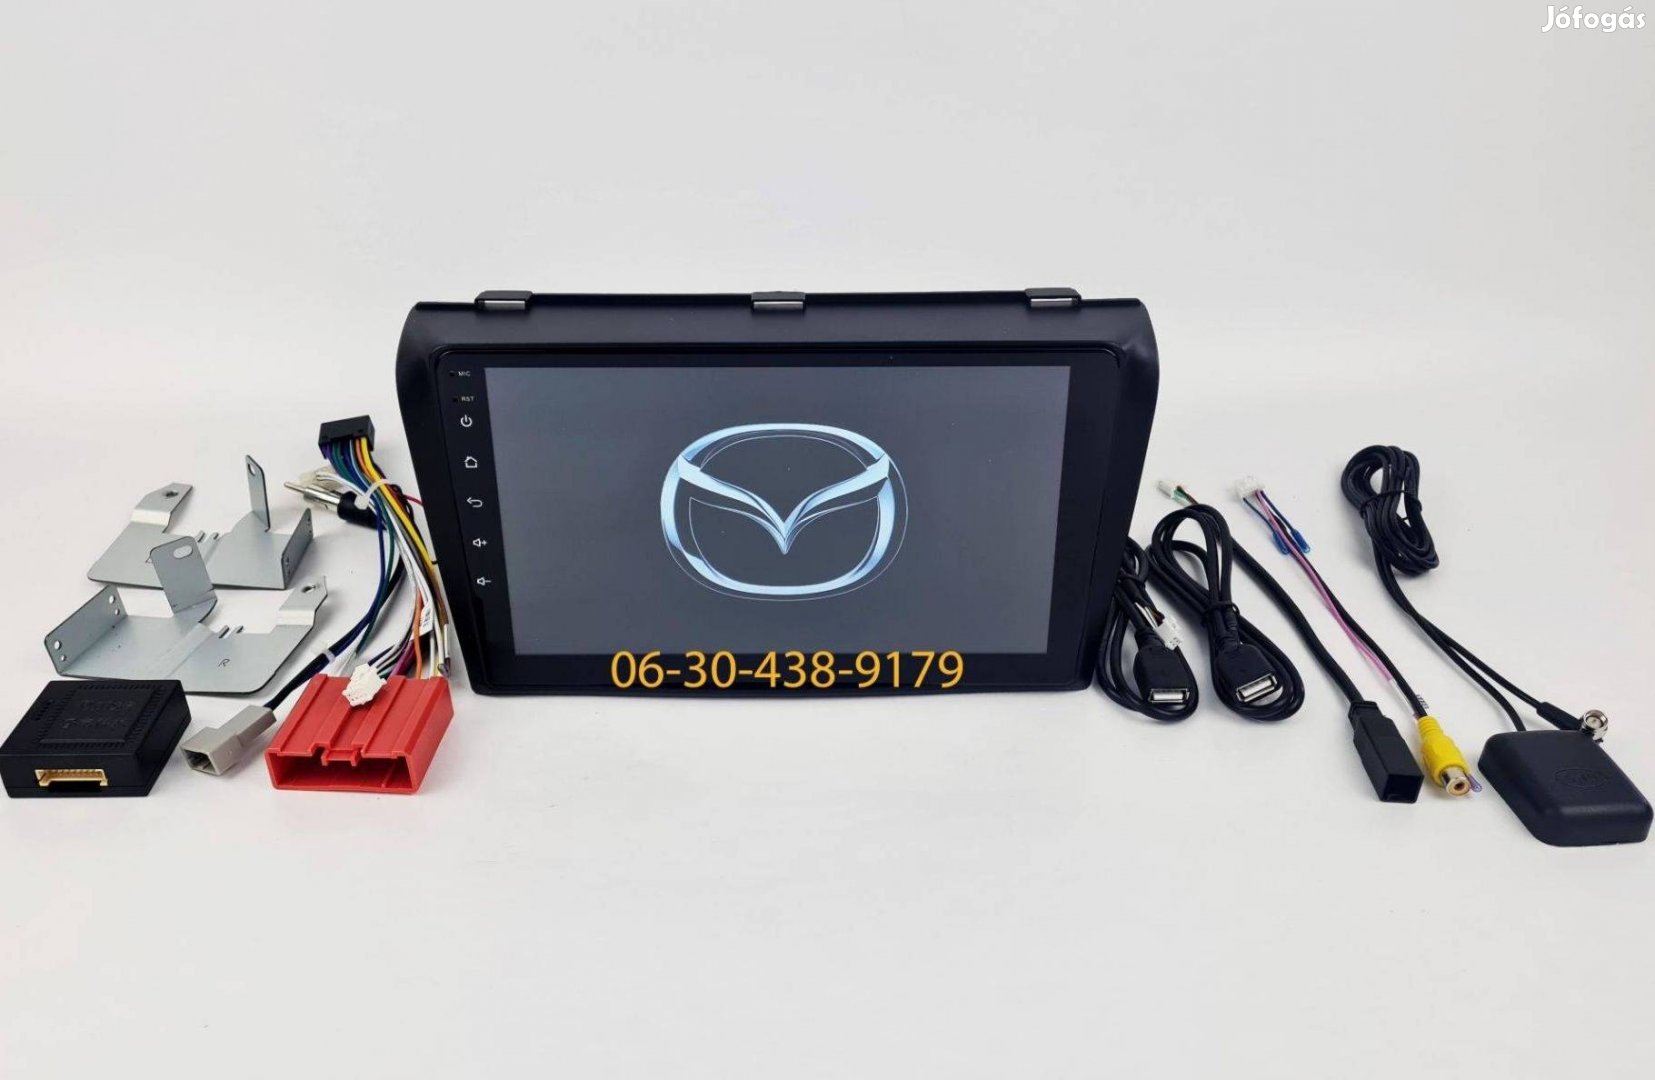 Mazda 3 2003-09 Android autórádió fejegység gyári helyre 1-4GB Carplay